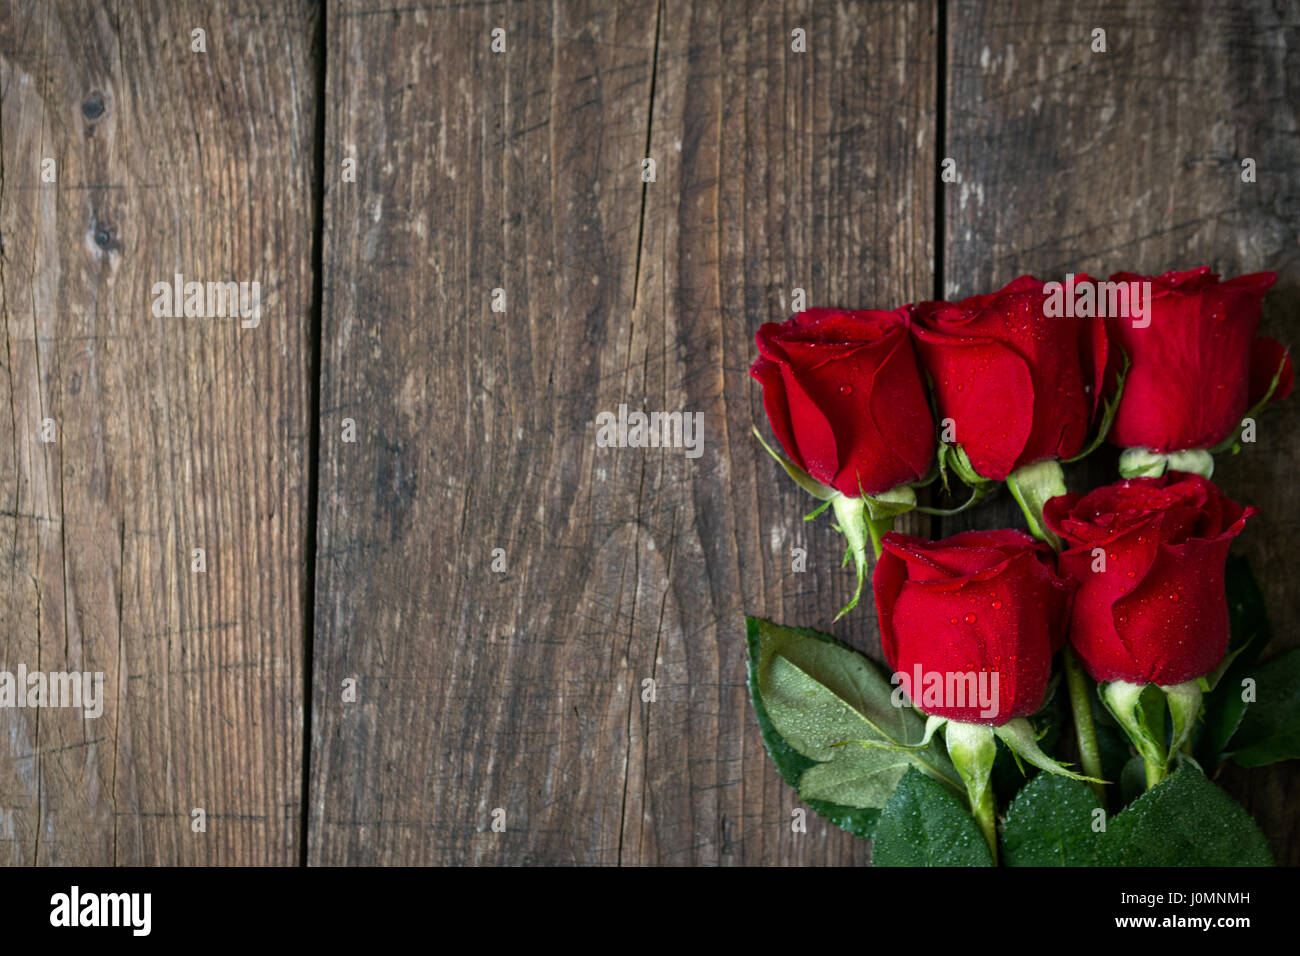 Vieux fond de bois avec des roses rouges copie espace Vue de dessus Banque D'Images